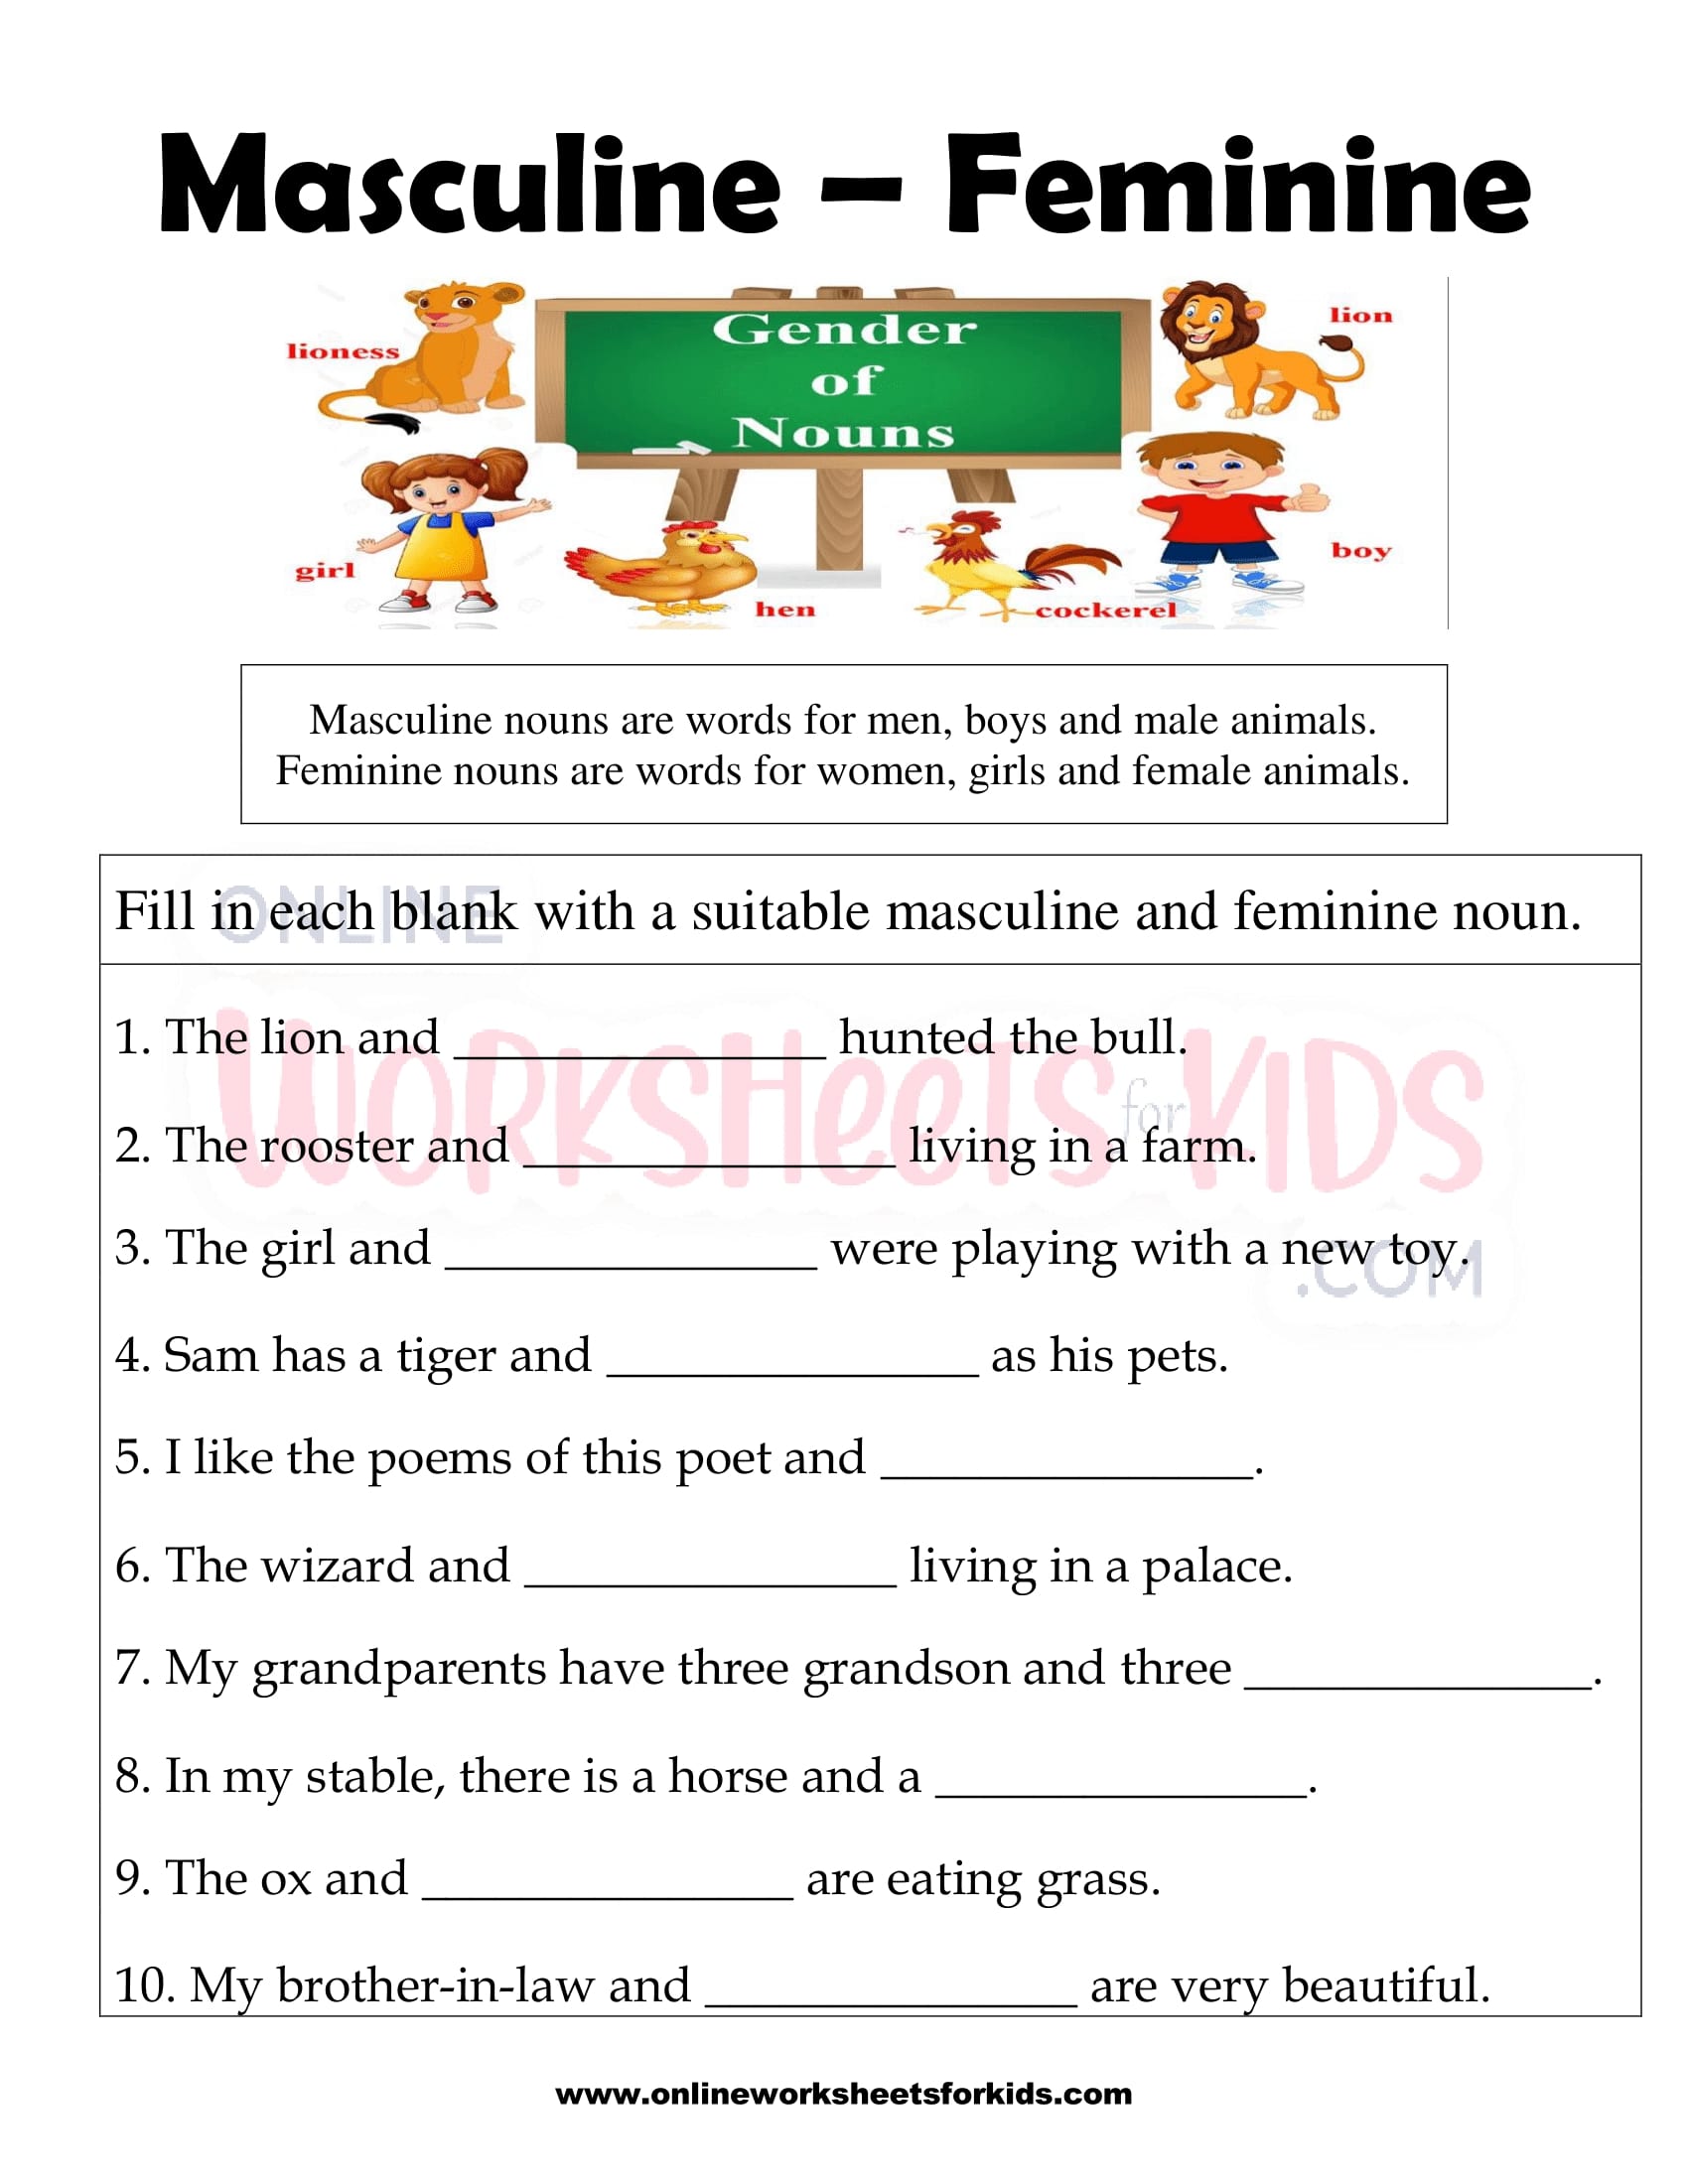 masculine-and-feminine-gender-worksheets-14